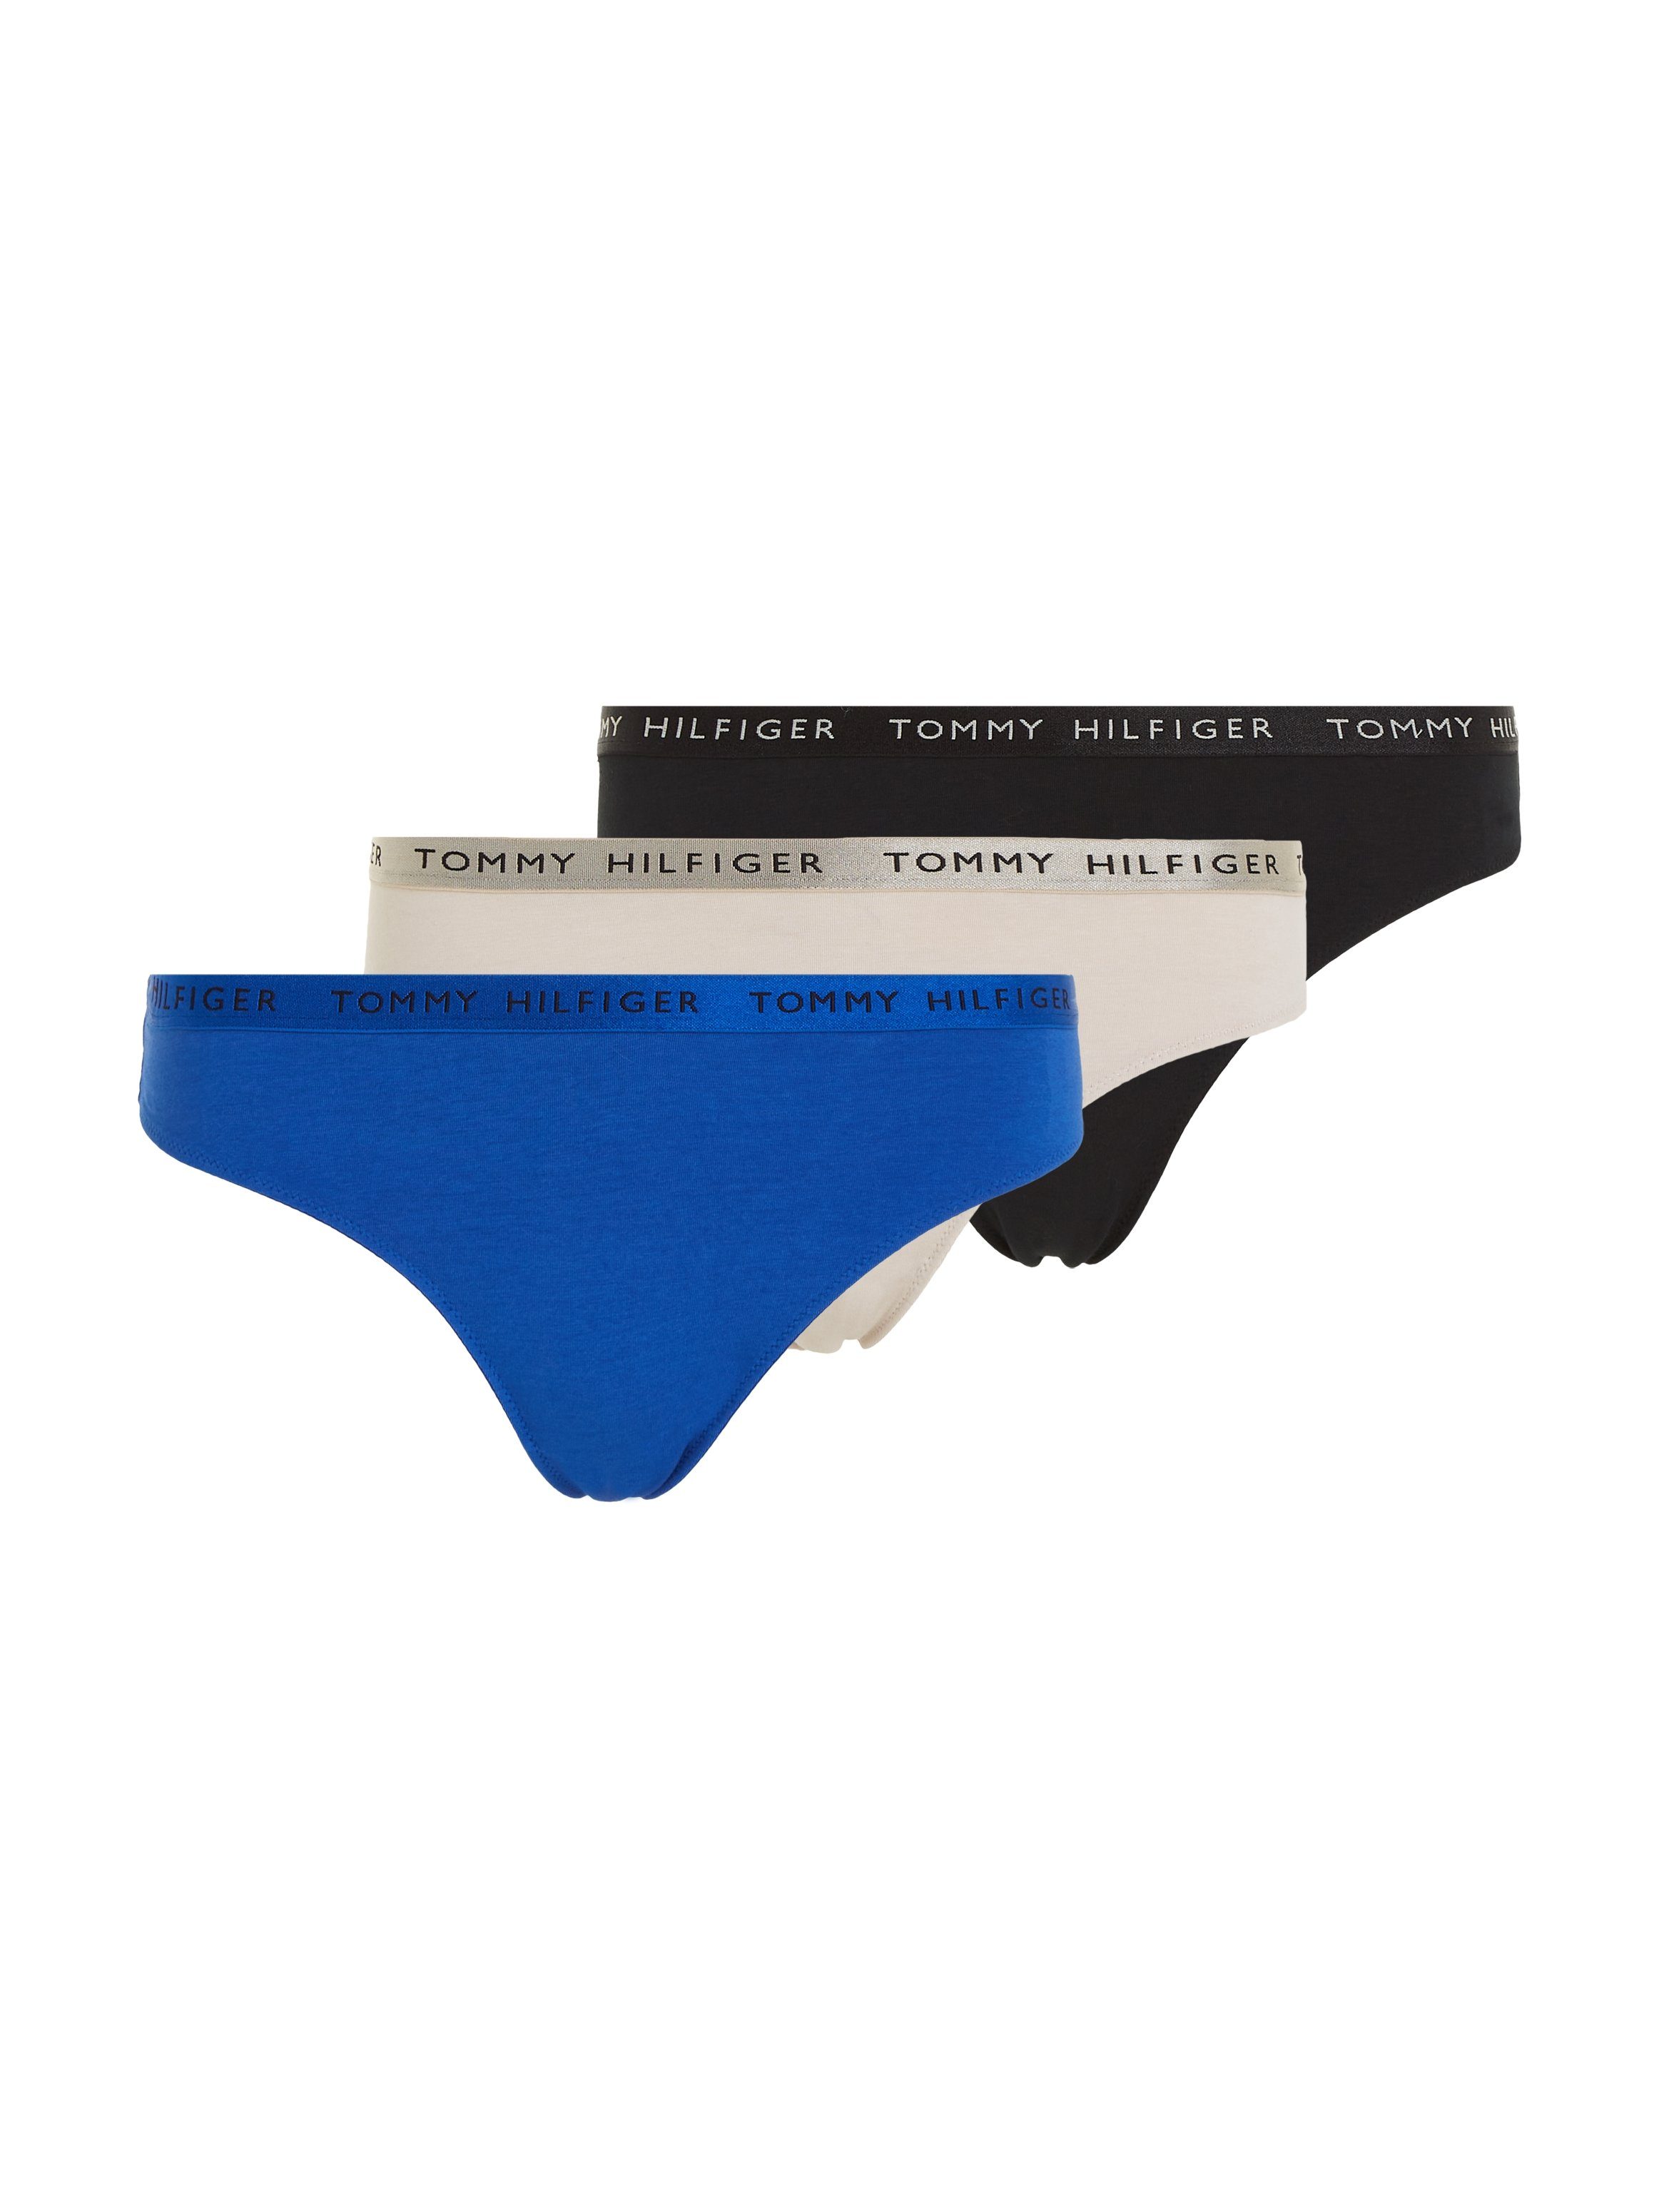 Tommy Hilfiger Underwear T-string SHINE 3 PACK THONG GIFTING met tommy hilfiger logoband (Set van 3)